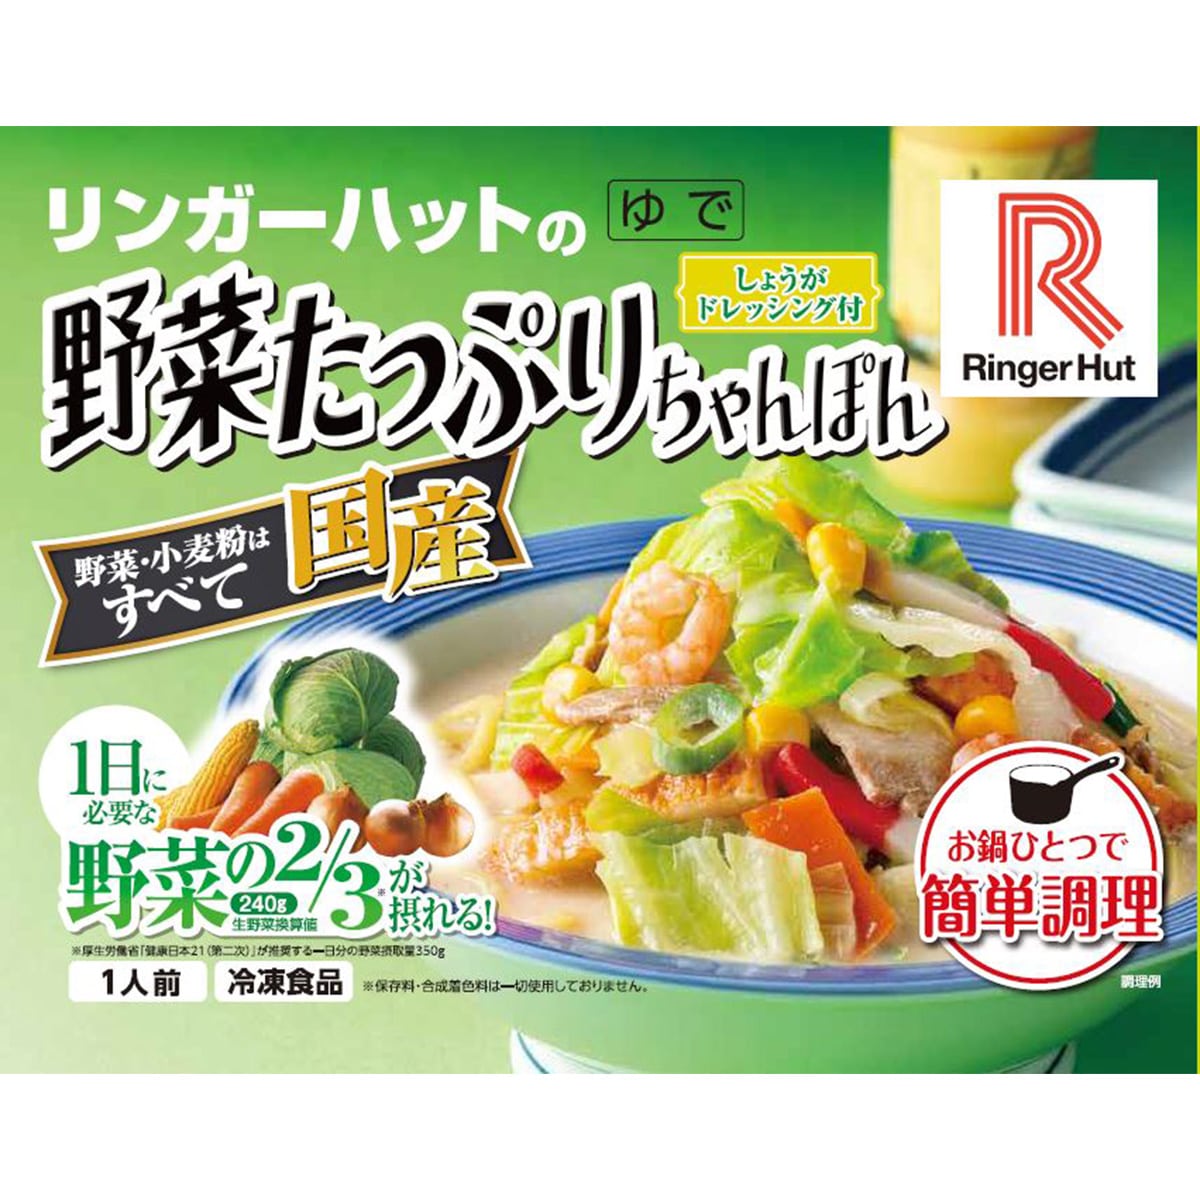 【リンガーハット】野菜たっぷりちゃんぽん